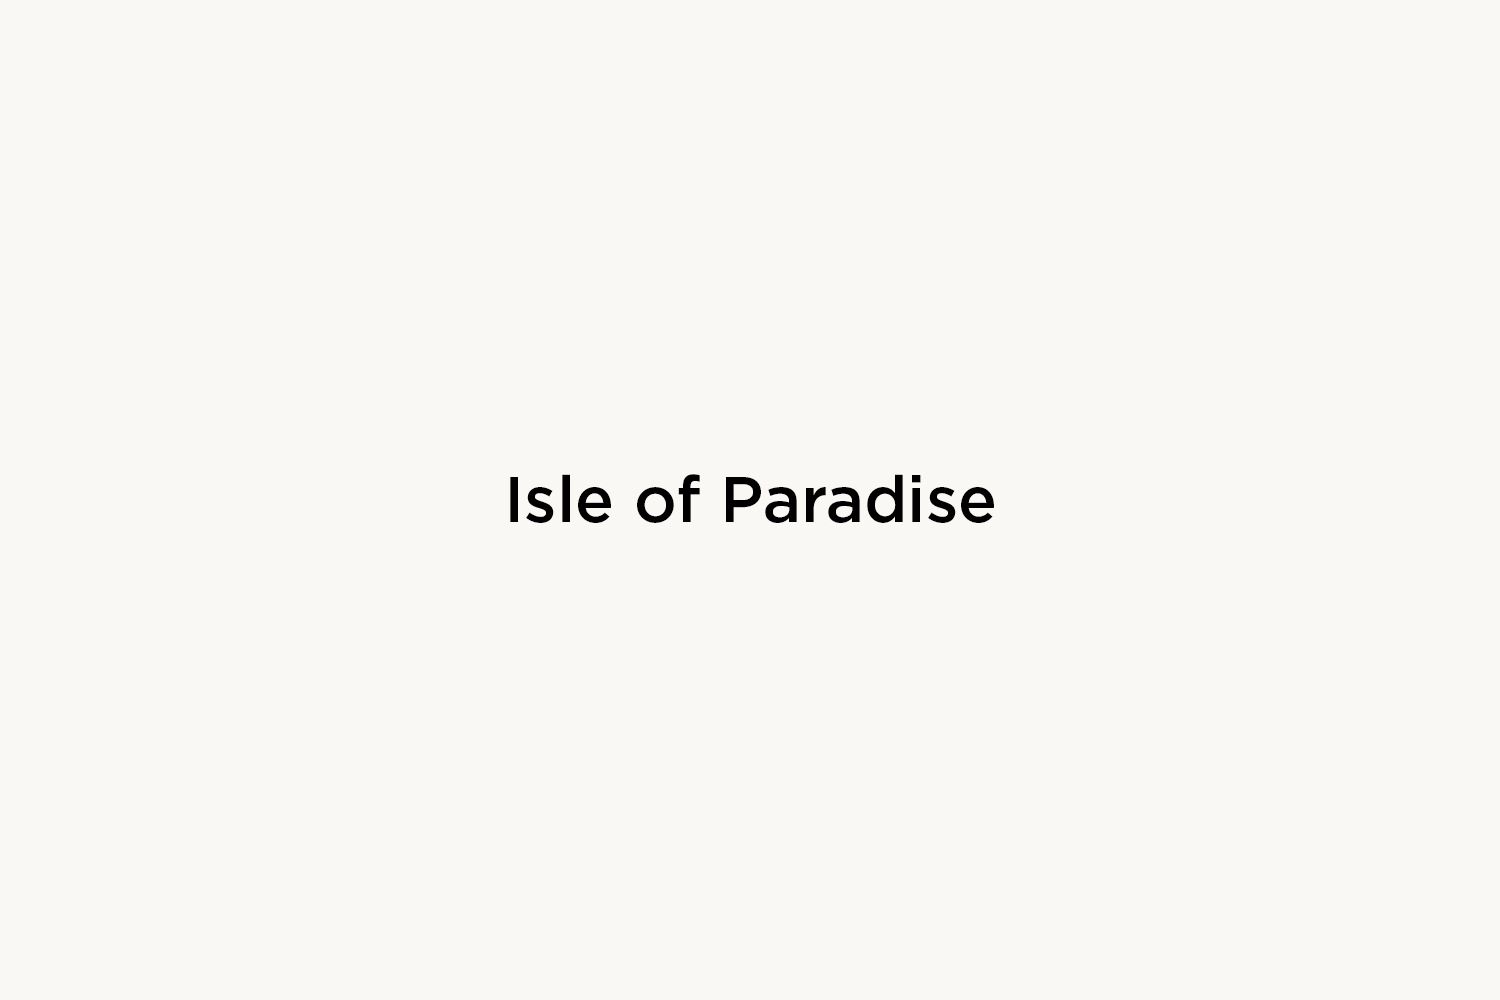 Isle Of Paradise